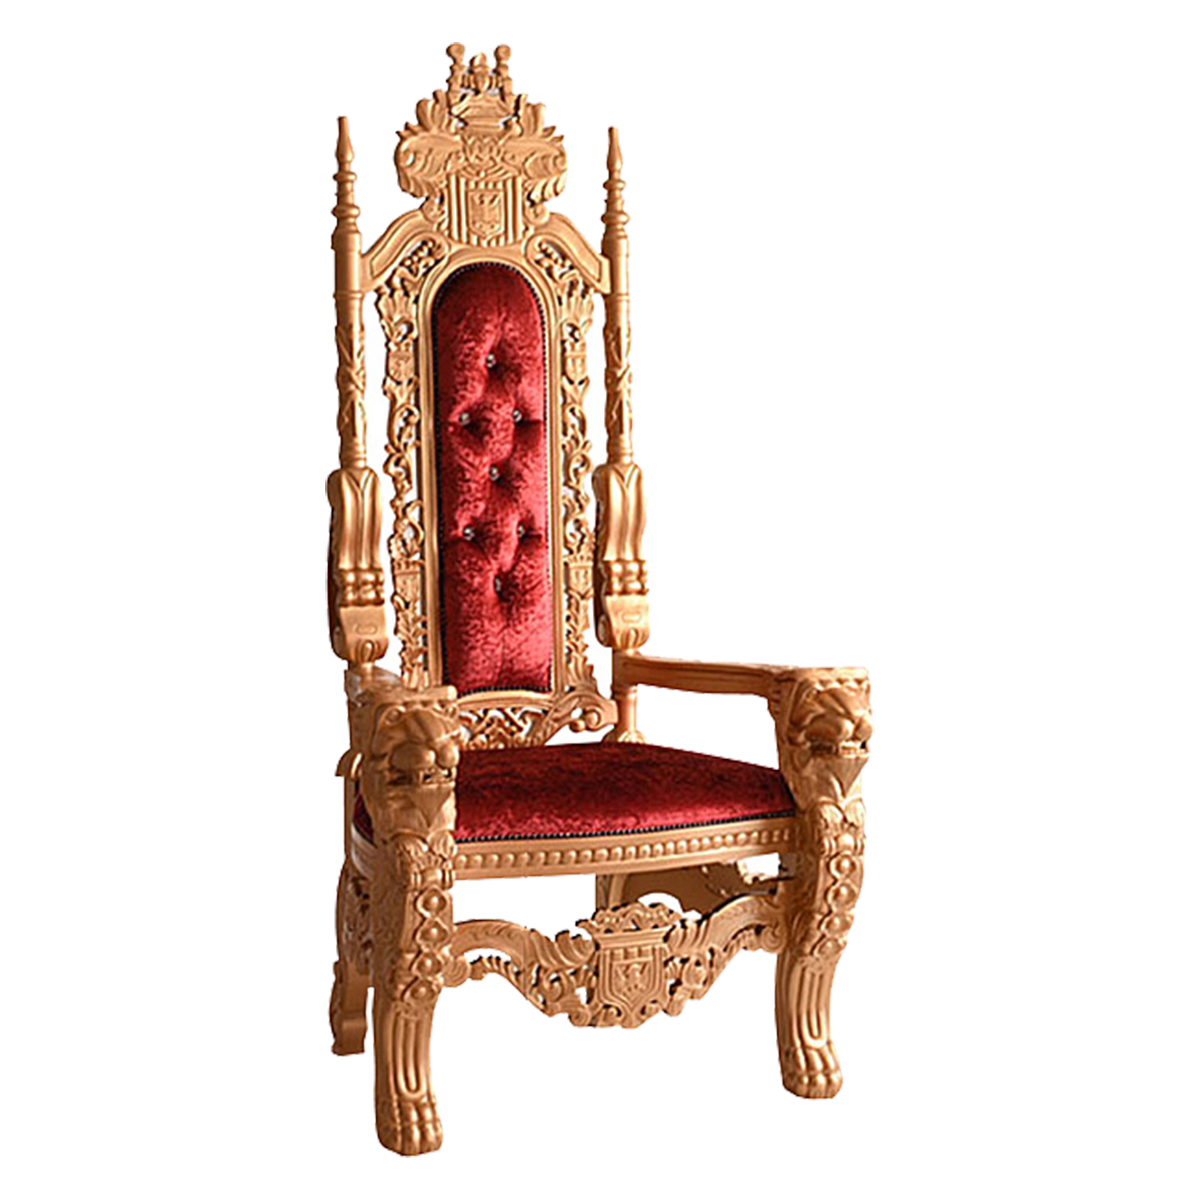 開梱設置付) キングチェア 輸入家具 王様の椅子 お姫様 アンティーク 